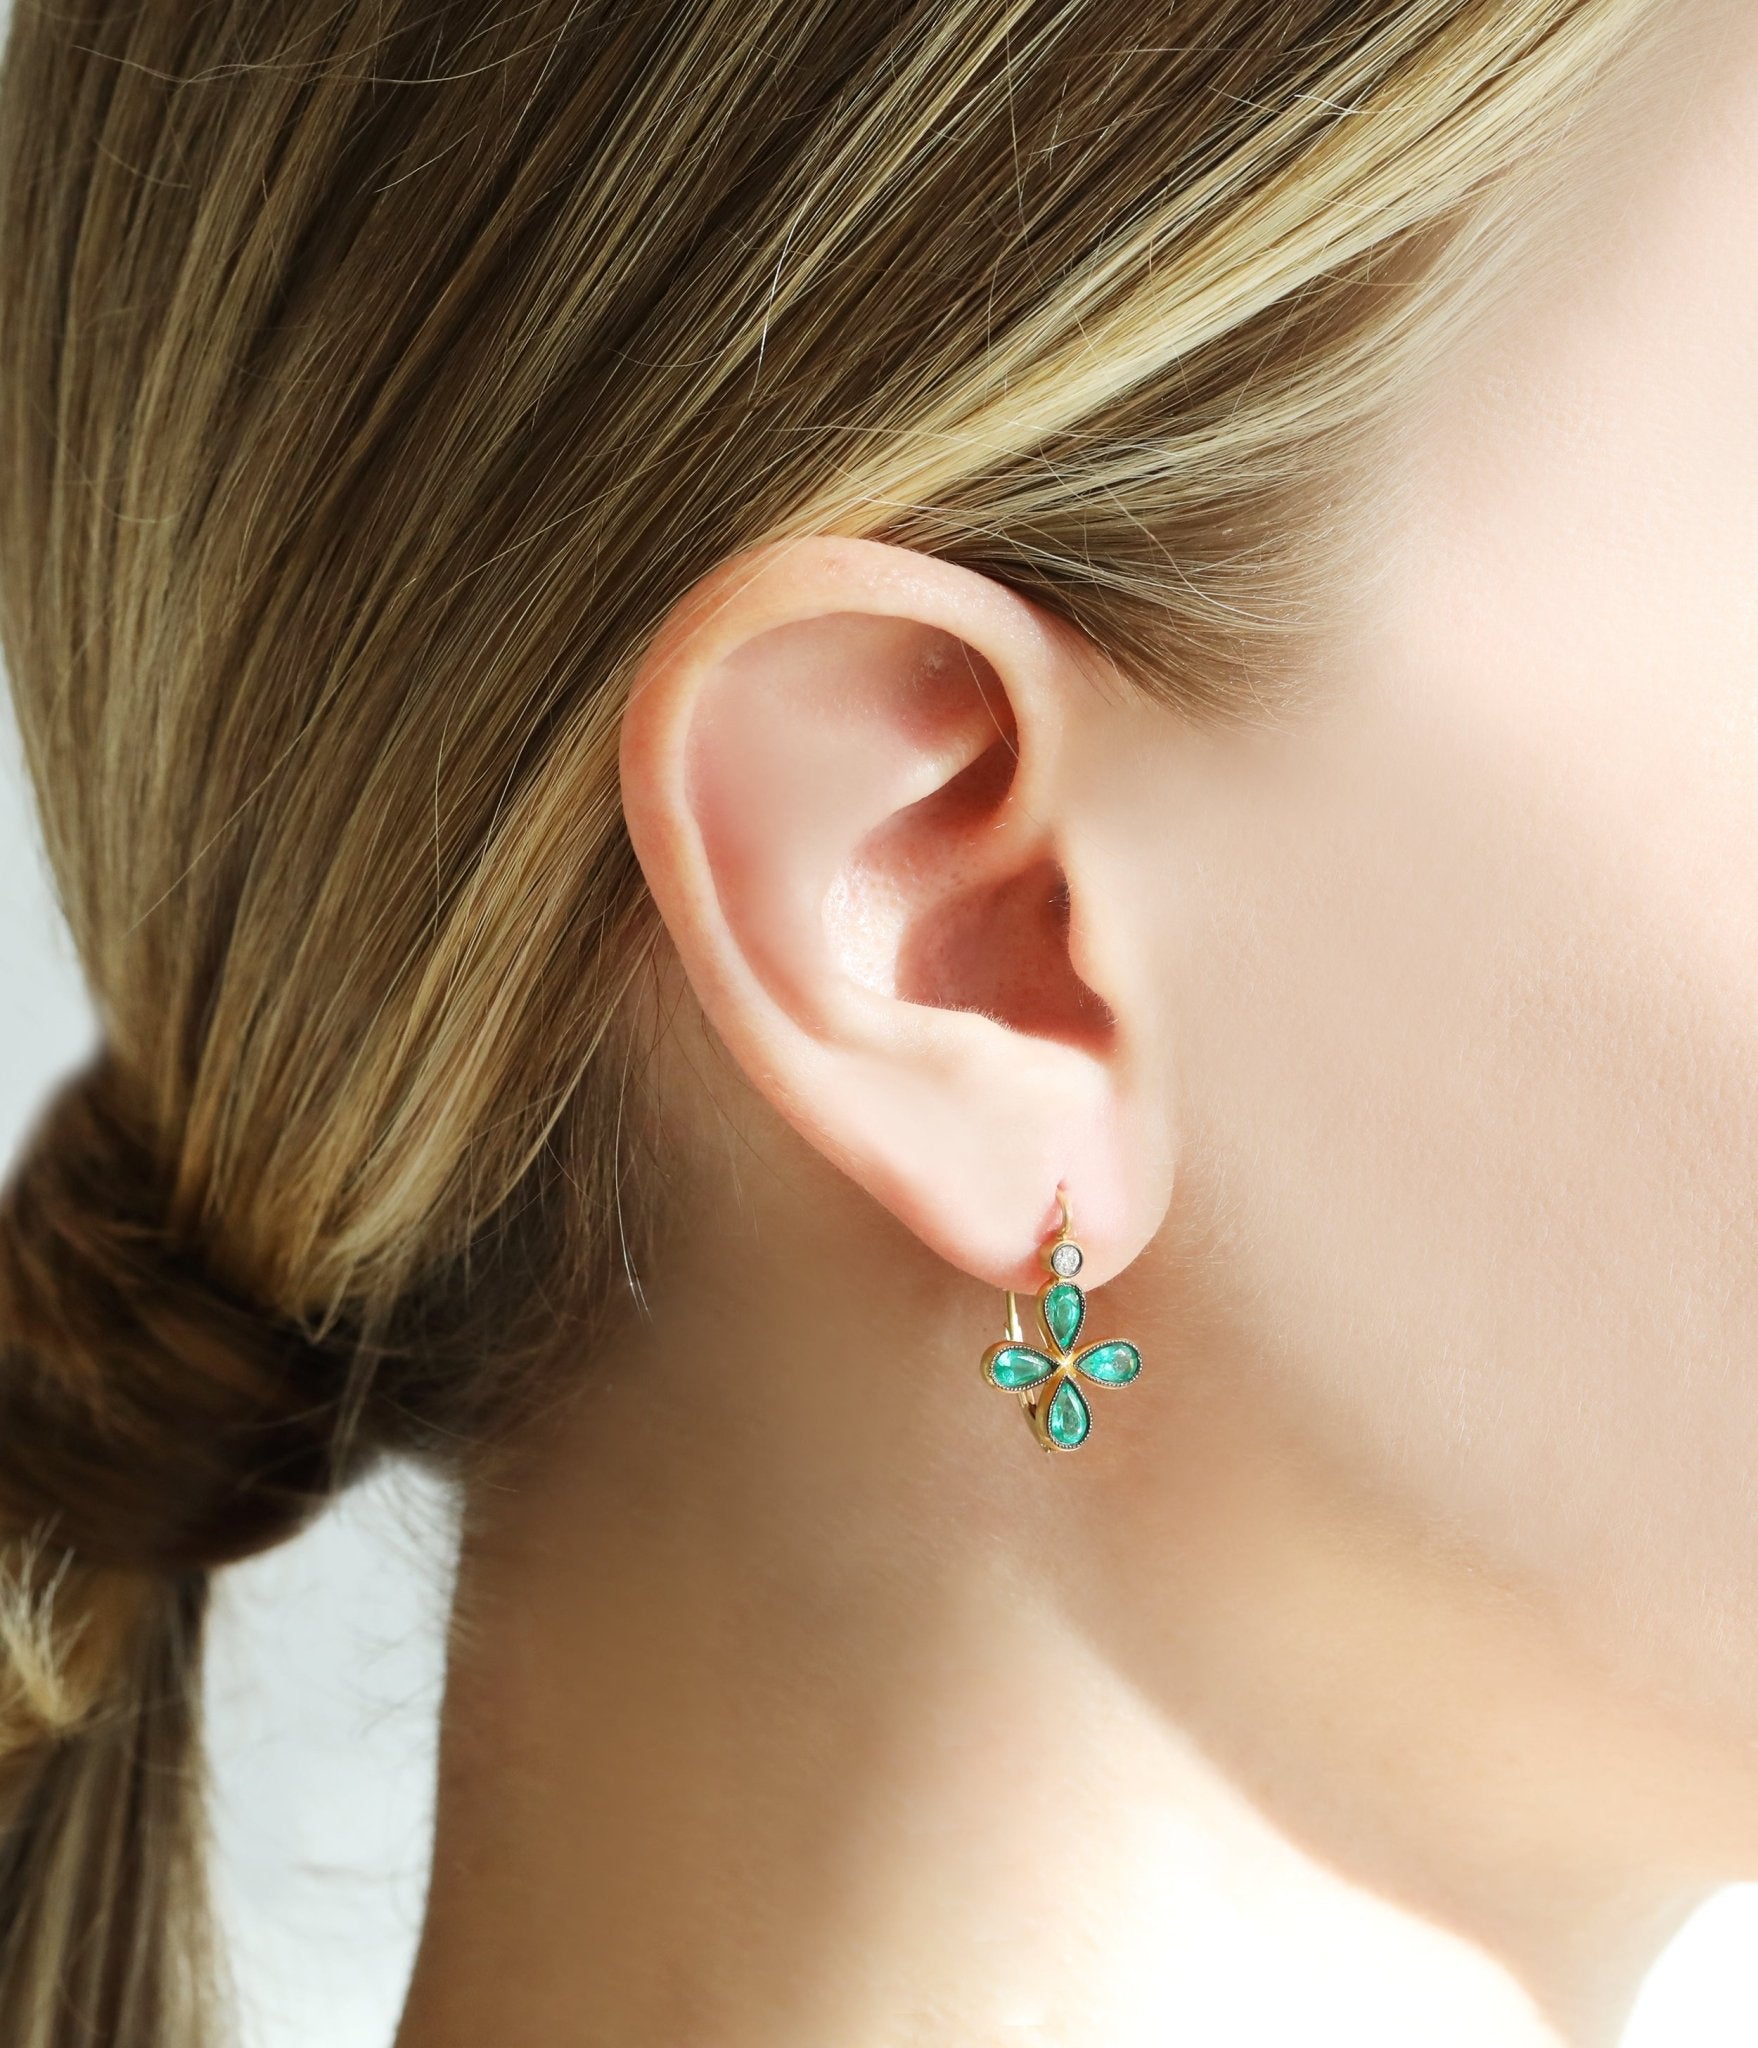 Cathy Waterman Blackened 22K Gold Bezel-Set Emerald "Star" Earrings with Diamond